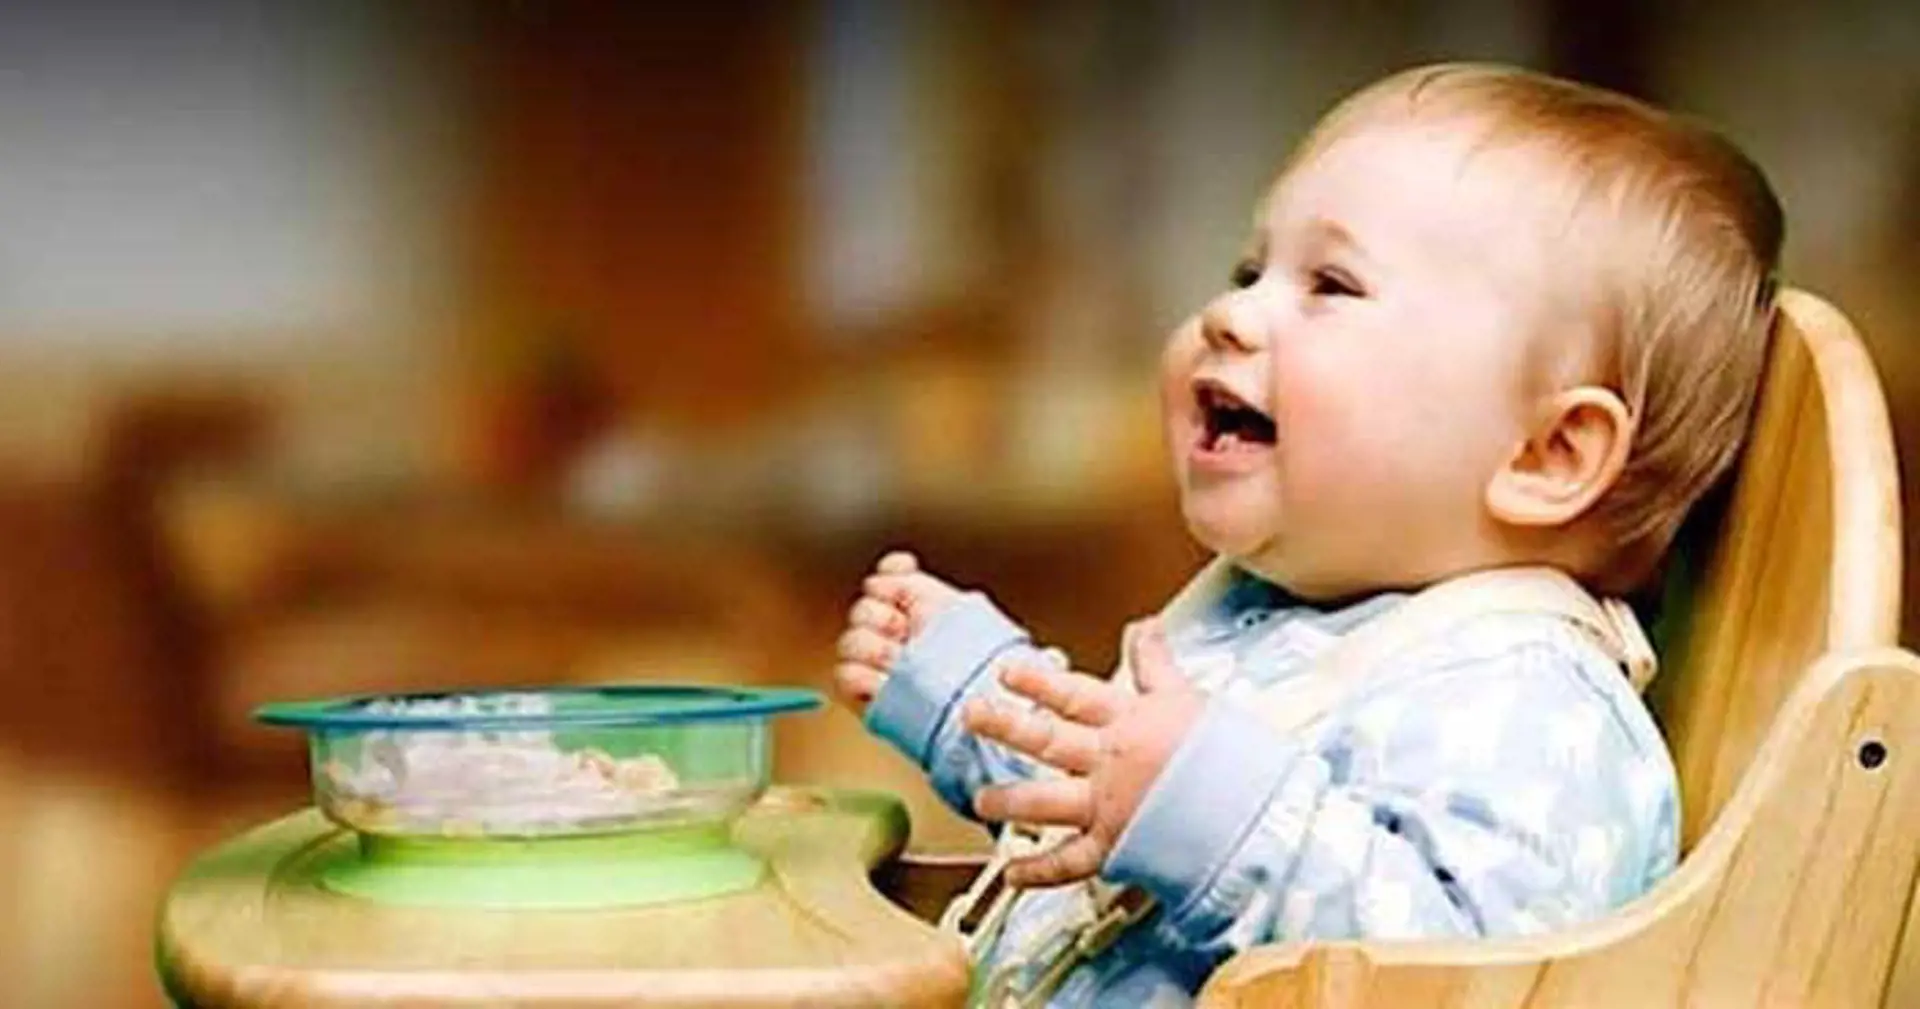 6 Aylık Bebeklerde Beslenme - 6 Aylık Bebeklere Ne Yer?